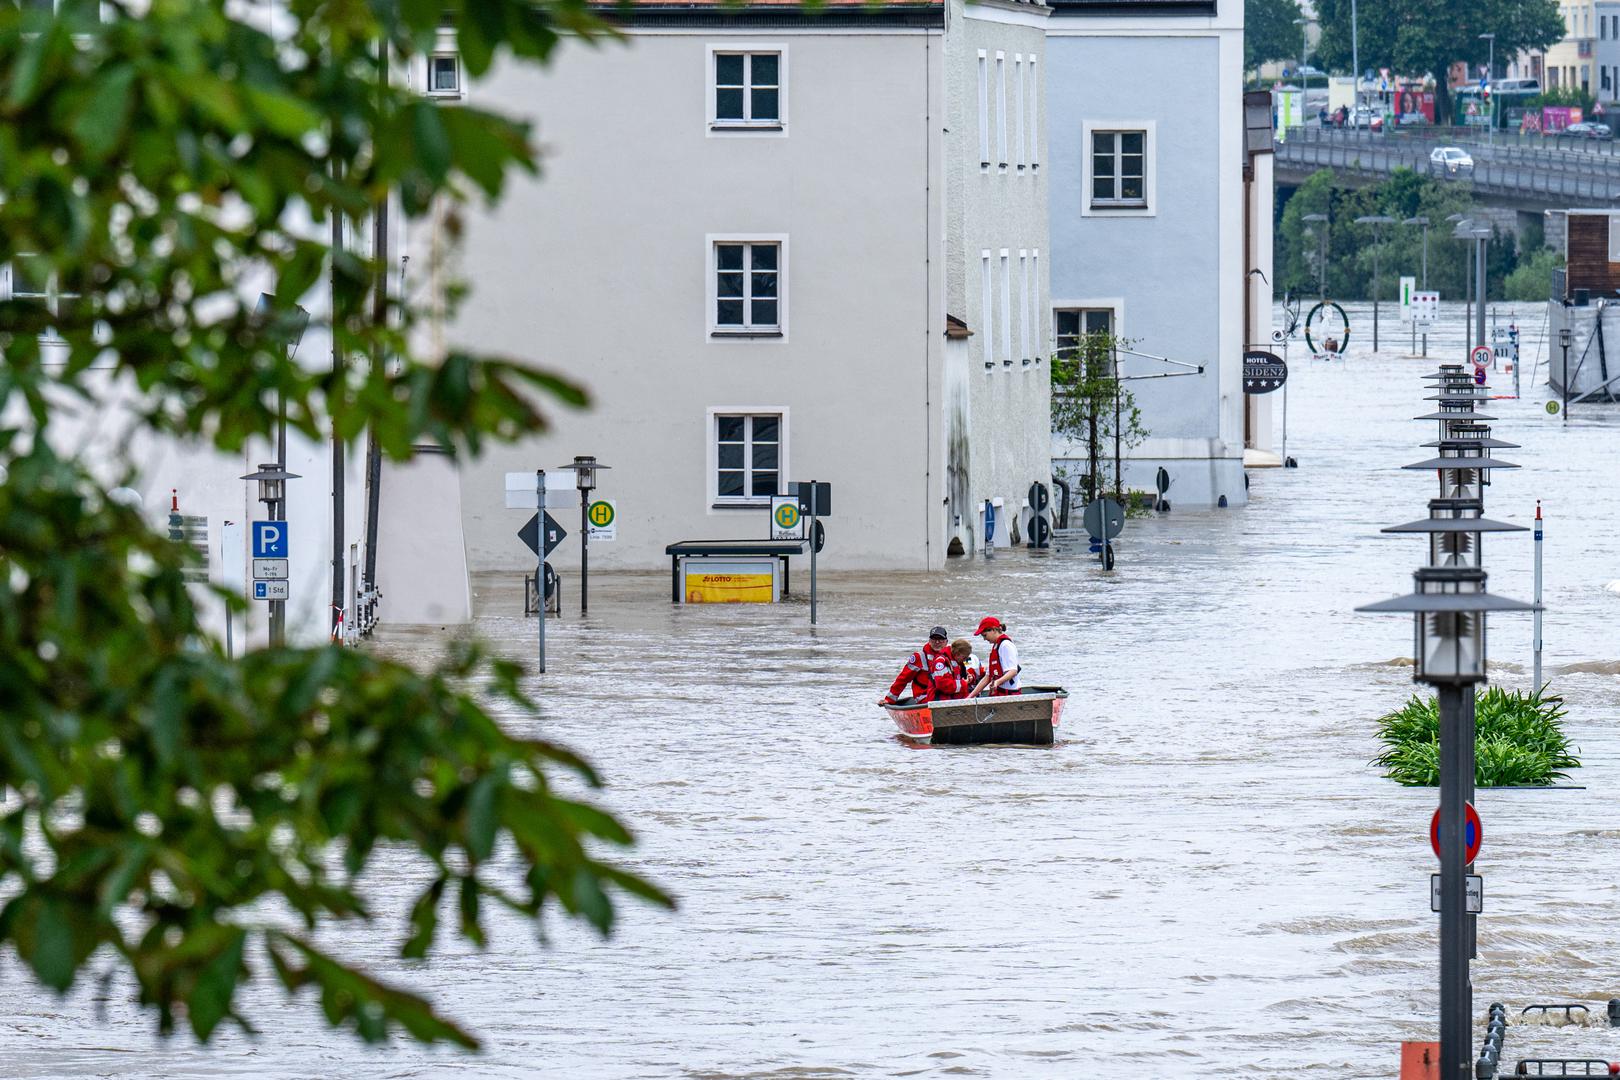 Financijska šteta zbog nastalih poplava je ogromna, a obnova će koštati milijarde. Primjerice, u ljeto 2021. dolinu njemačke rijeke Ahr pogodile su razorne poplave. Život je izgubilo 135 ljudi, a prema procjenama njemačke vlade, materijalna šteta u tom području iznosi više od 30 milijardi eura.